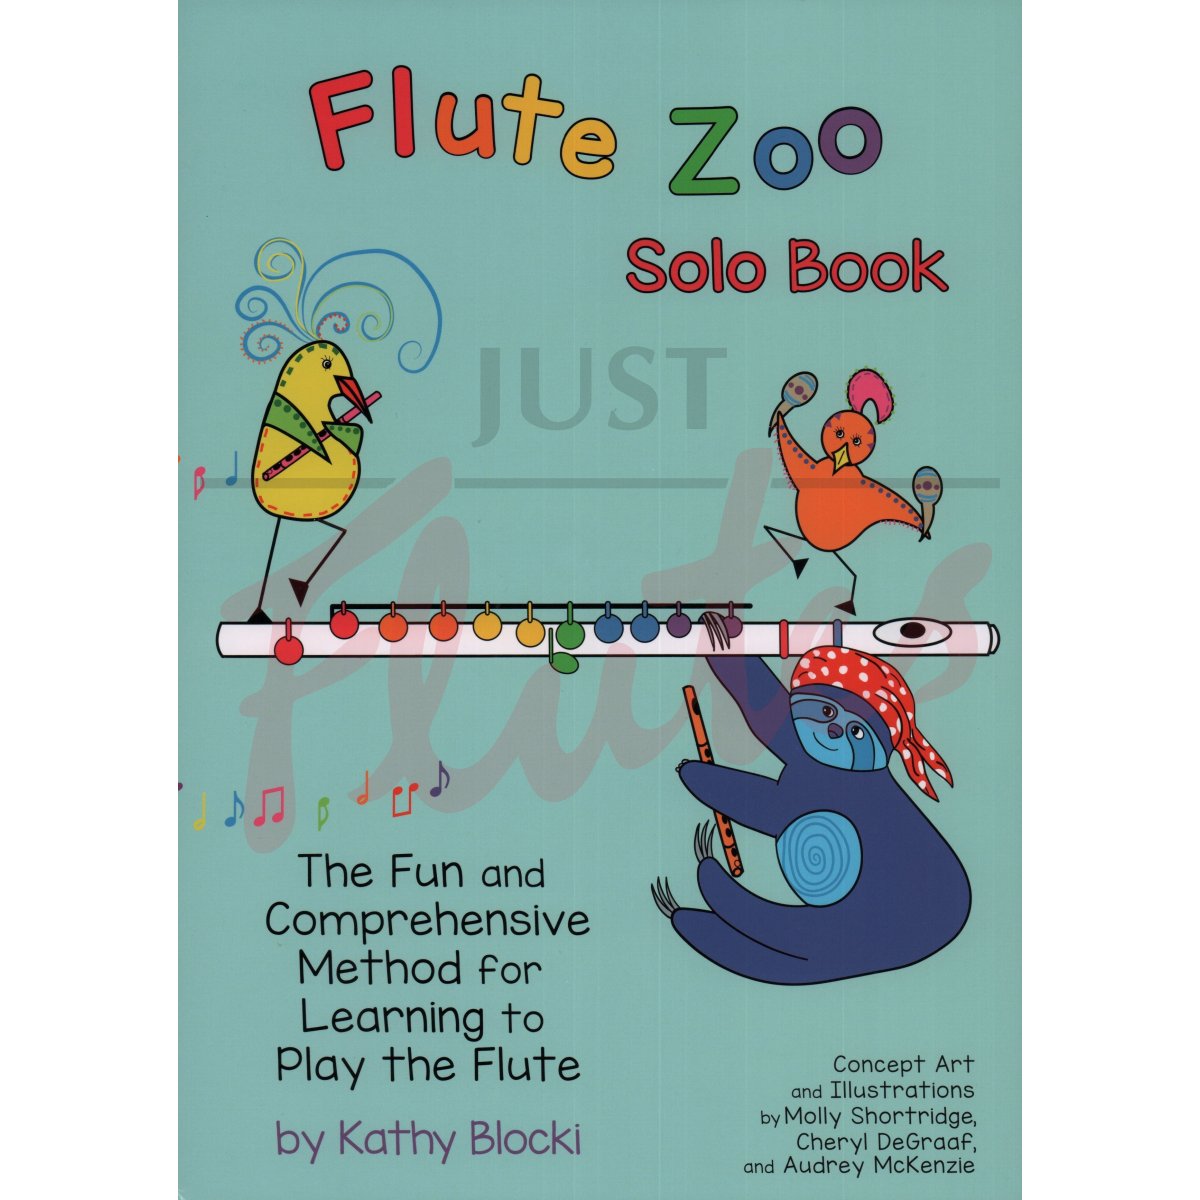 Flute Zoo Solo Book